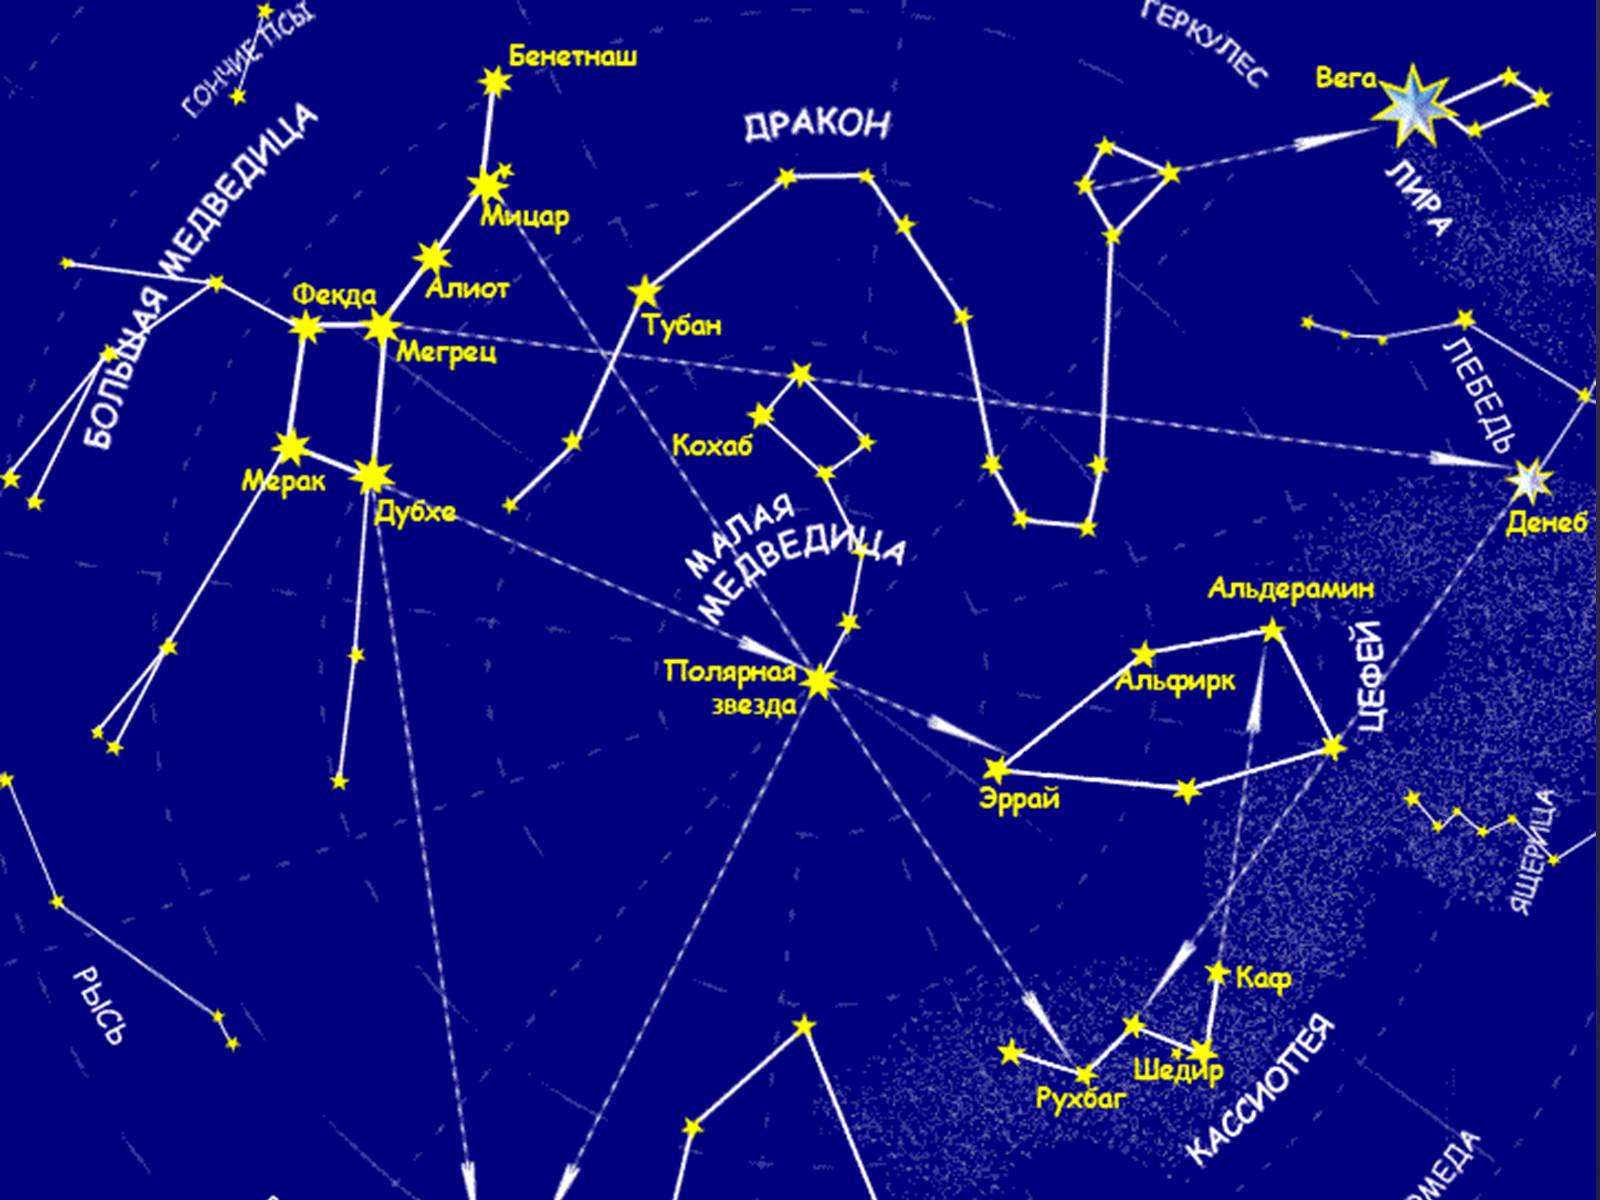 Созвездие 55. Звездная карта созвездия. Карта звездного неба с названиями созвездий большая Медведица. Карта звёздного неба Северное полушарие большая Медведица. Околополярные незаходящие созвездия.